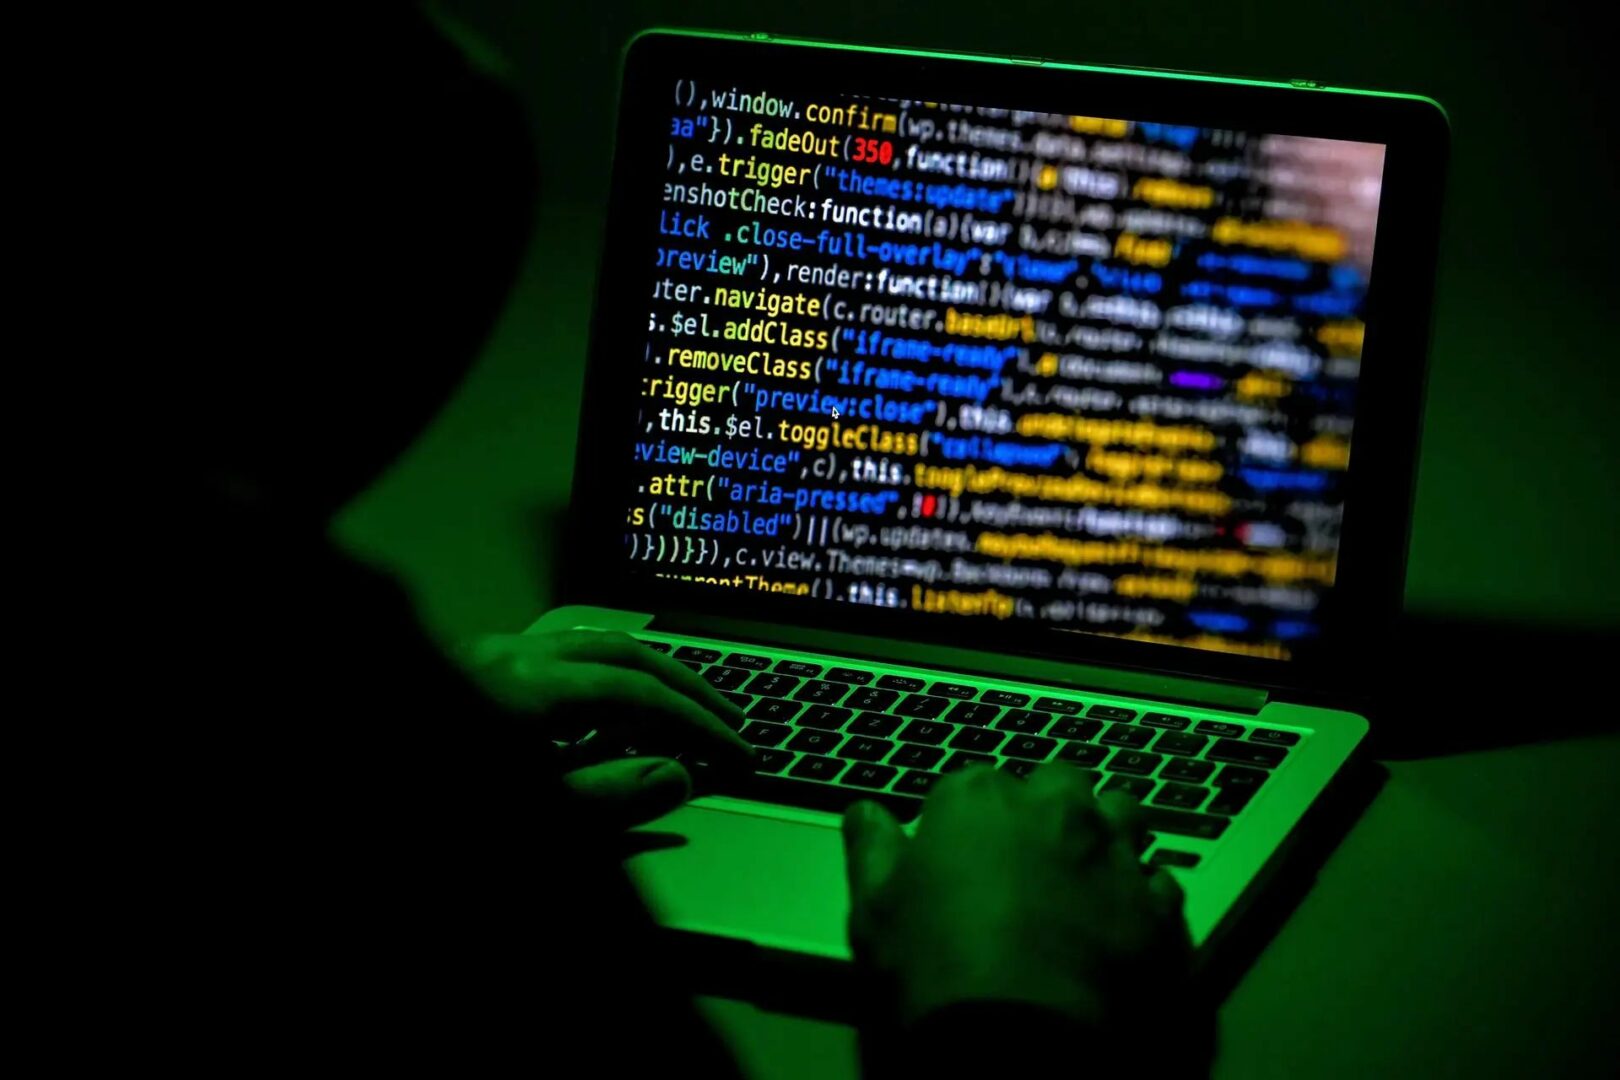 Universidad de Florida recibe millones para mejorar la ciberseguridad en EEUU